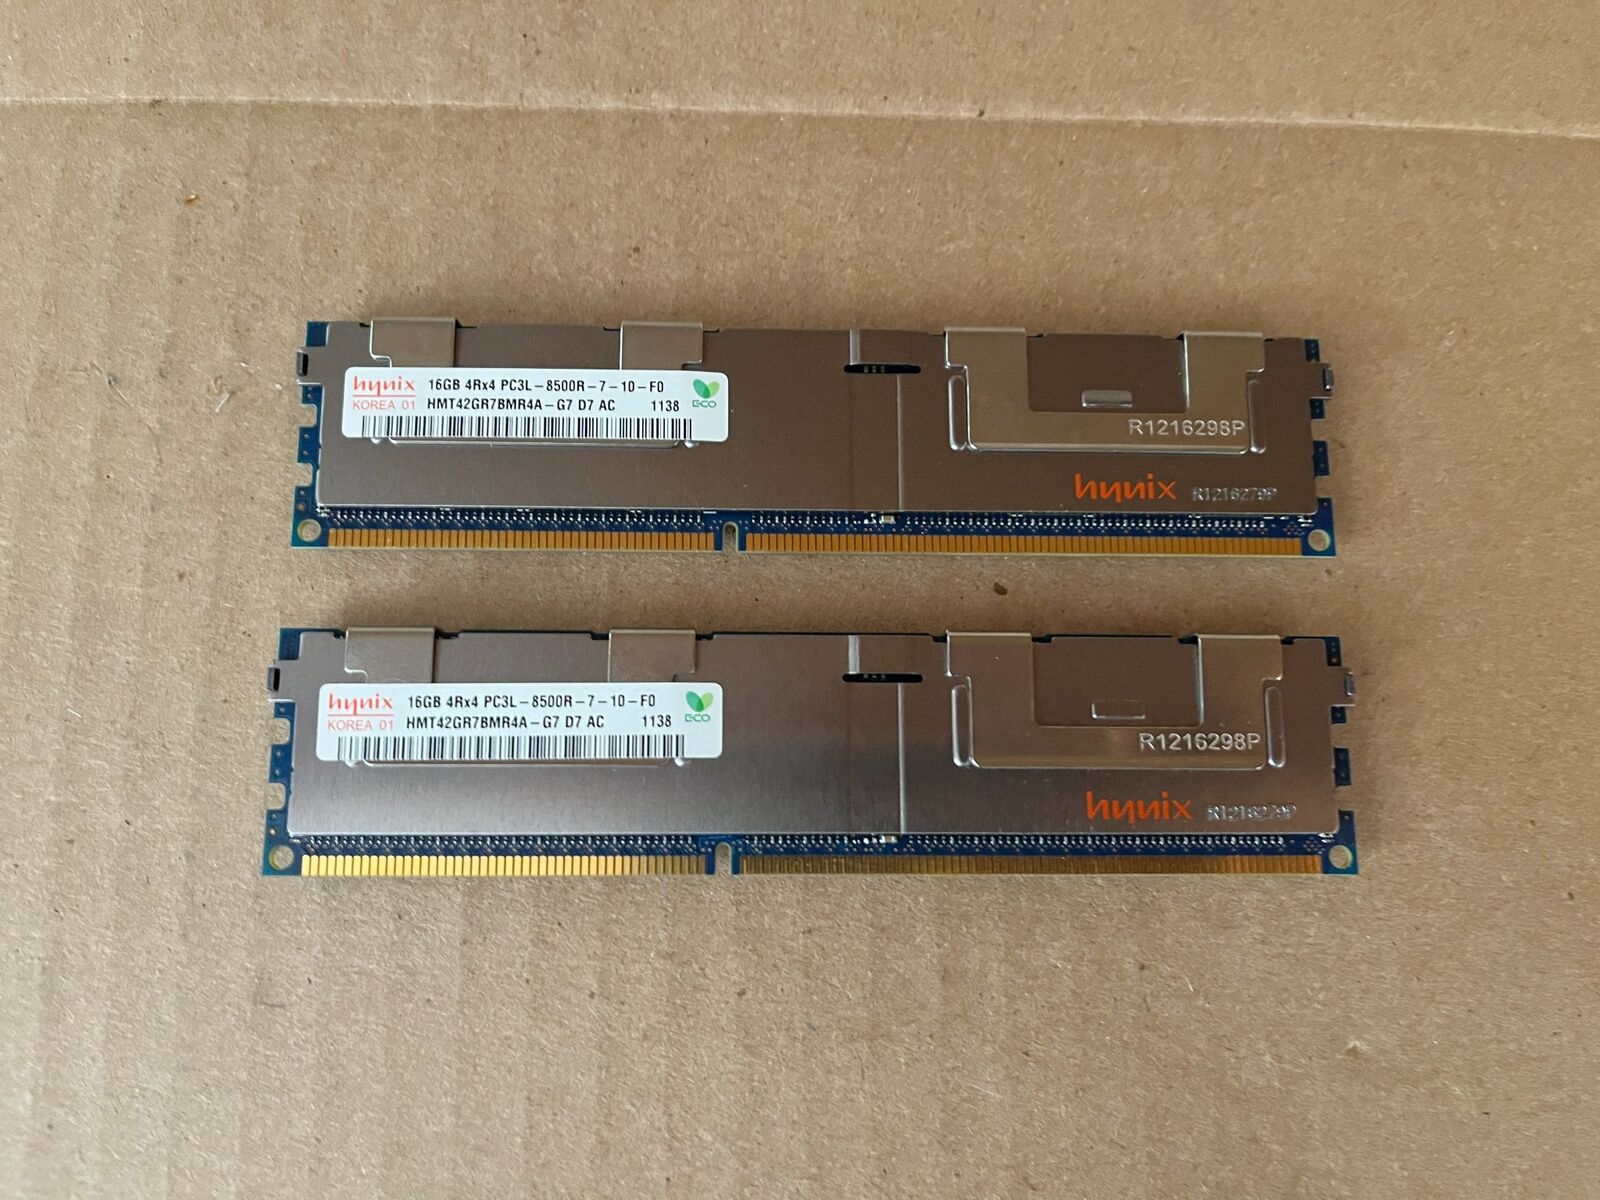 LOT OF 2 HYNIX 16GB PC3L-8500R 4RX4 DDR3-1066 240-PIN HMT42GR7BMR4A-G7 L4-3(7)